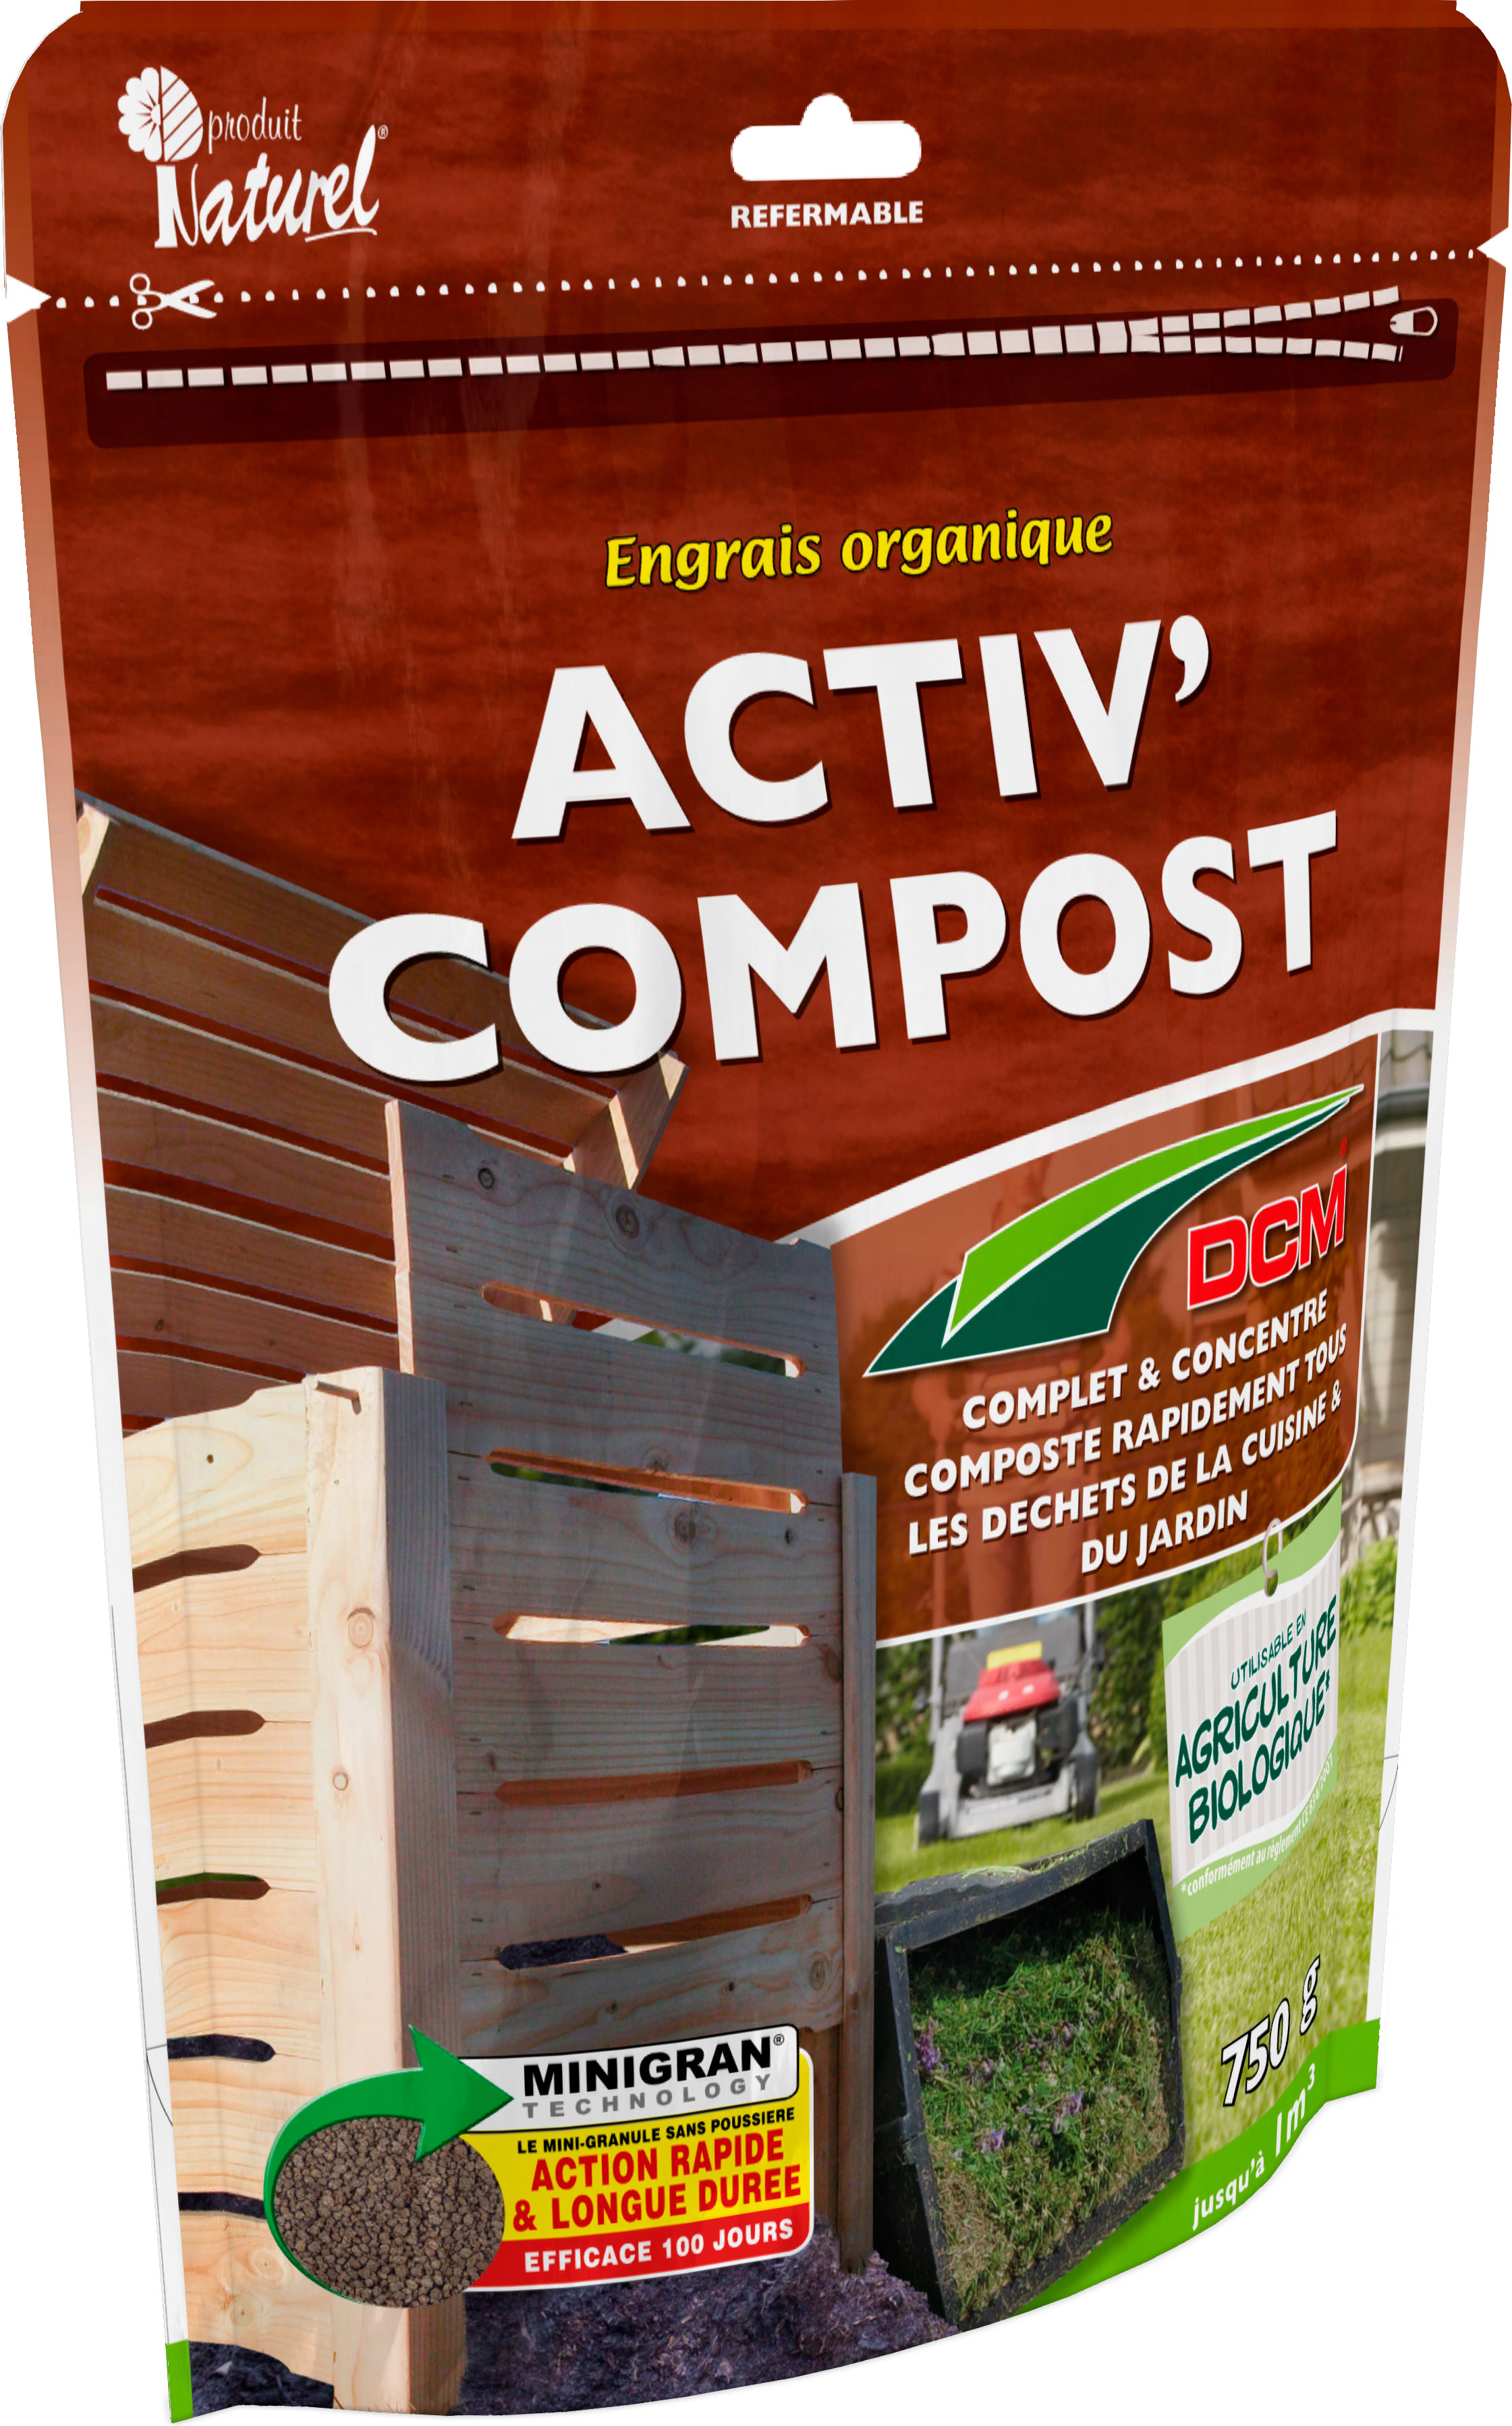 Activateur de Compost DCM - DCM